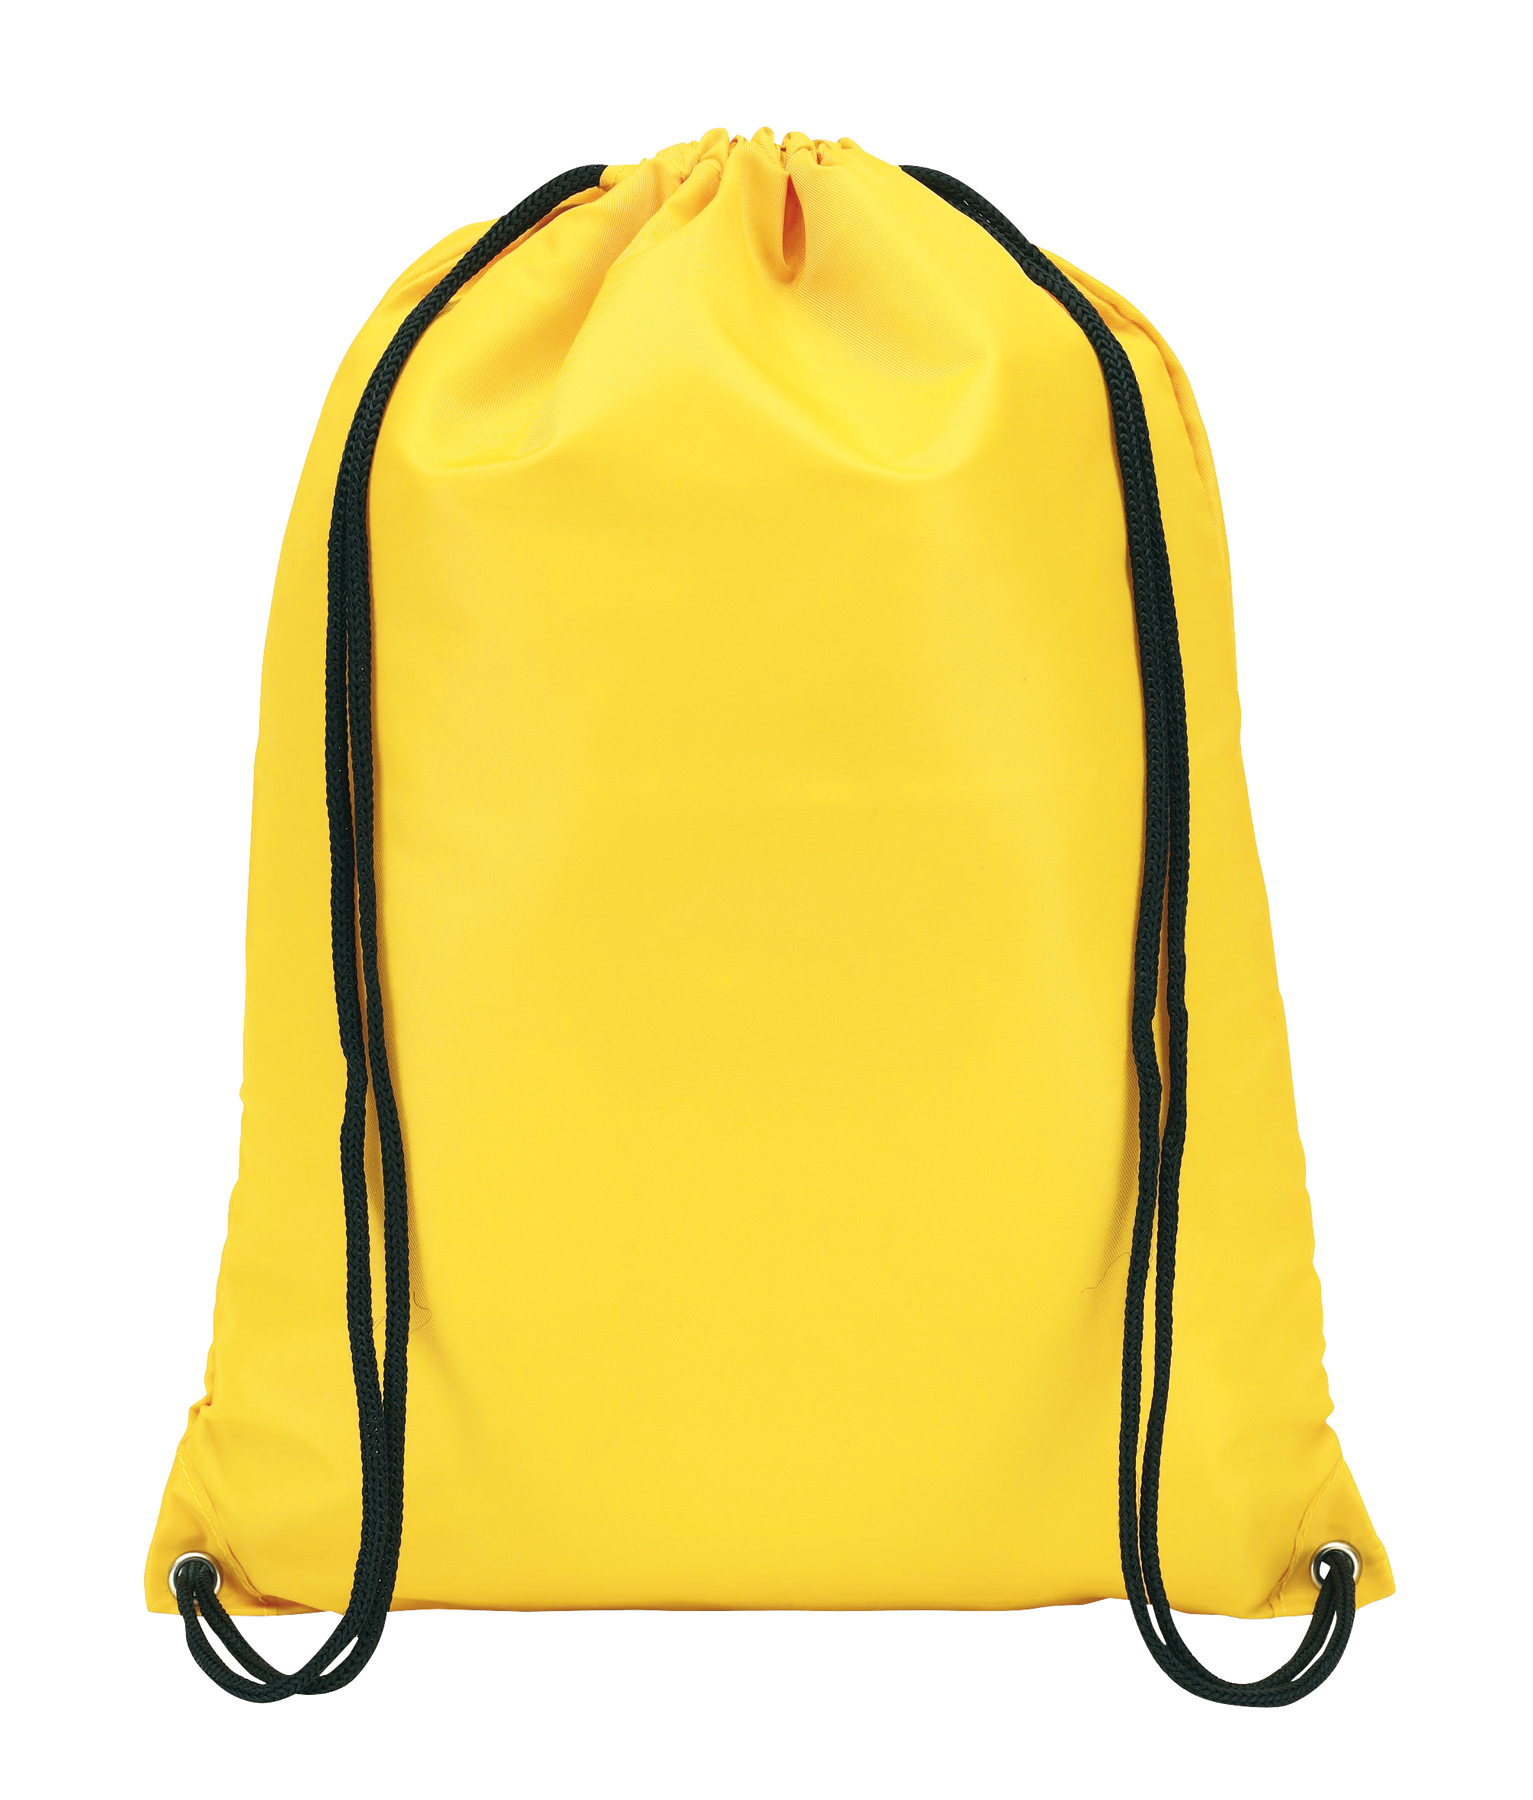 Plecak TOWN, żółty